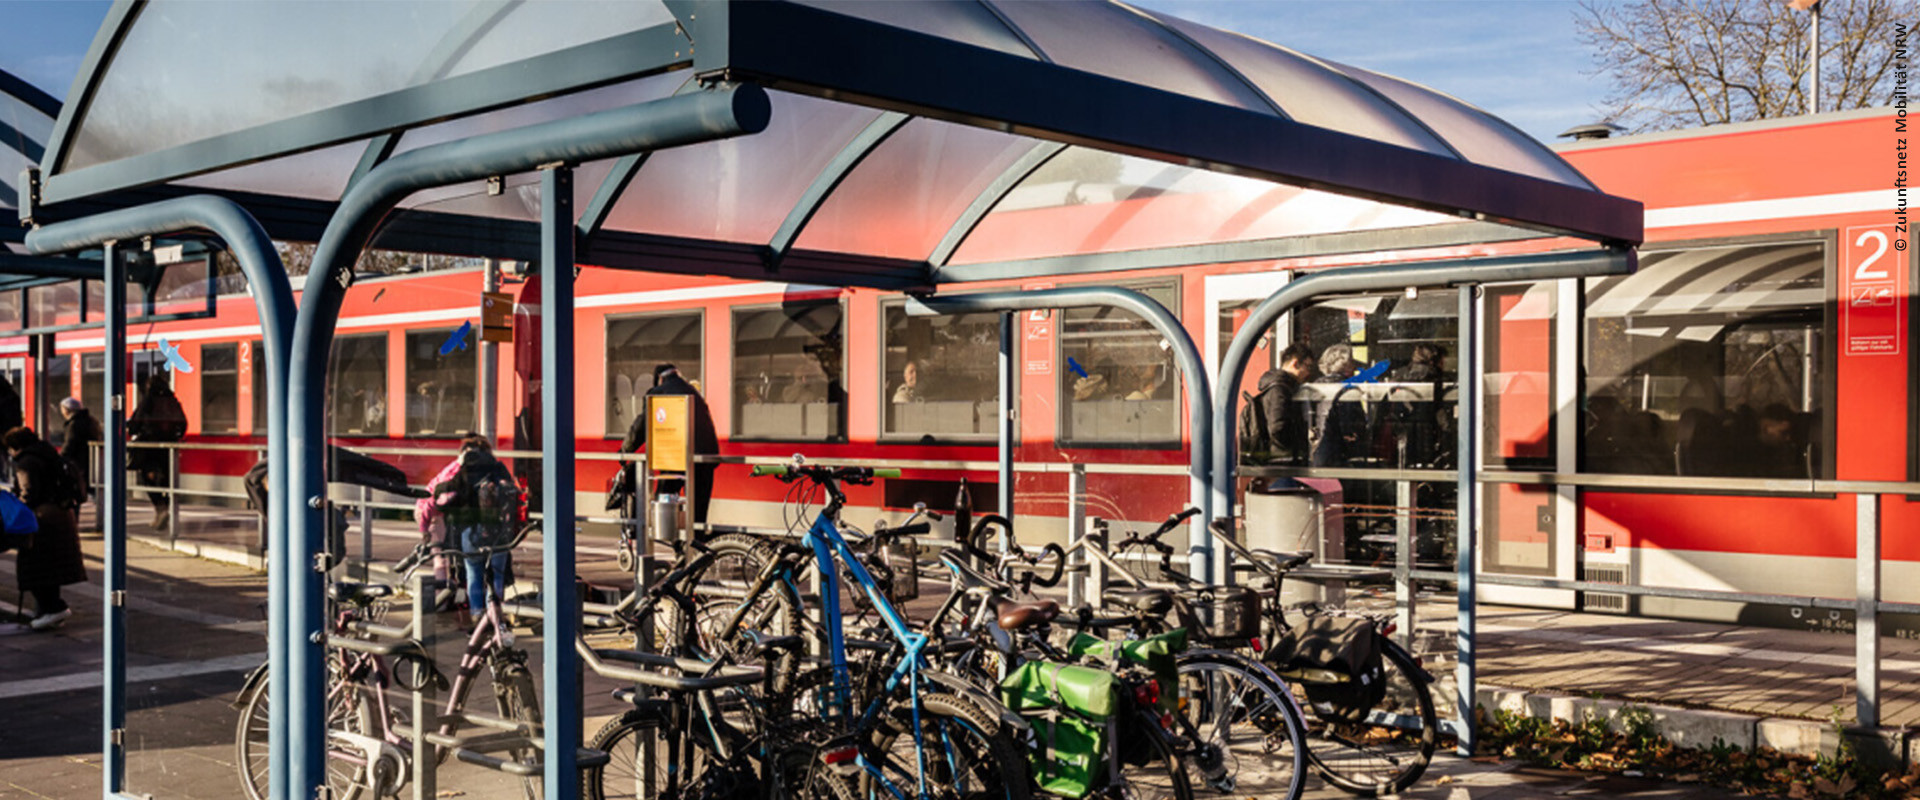 An einem Bahnsteig steht ein roter Zug, Fahrgäste steigen ein, im Vordergrund stehen Fahrräder unter einem Dach